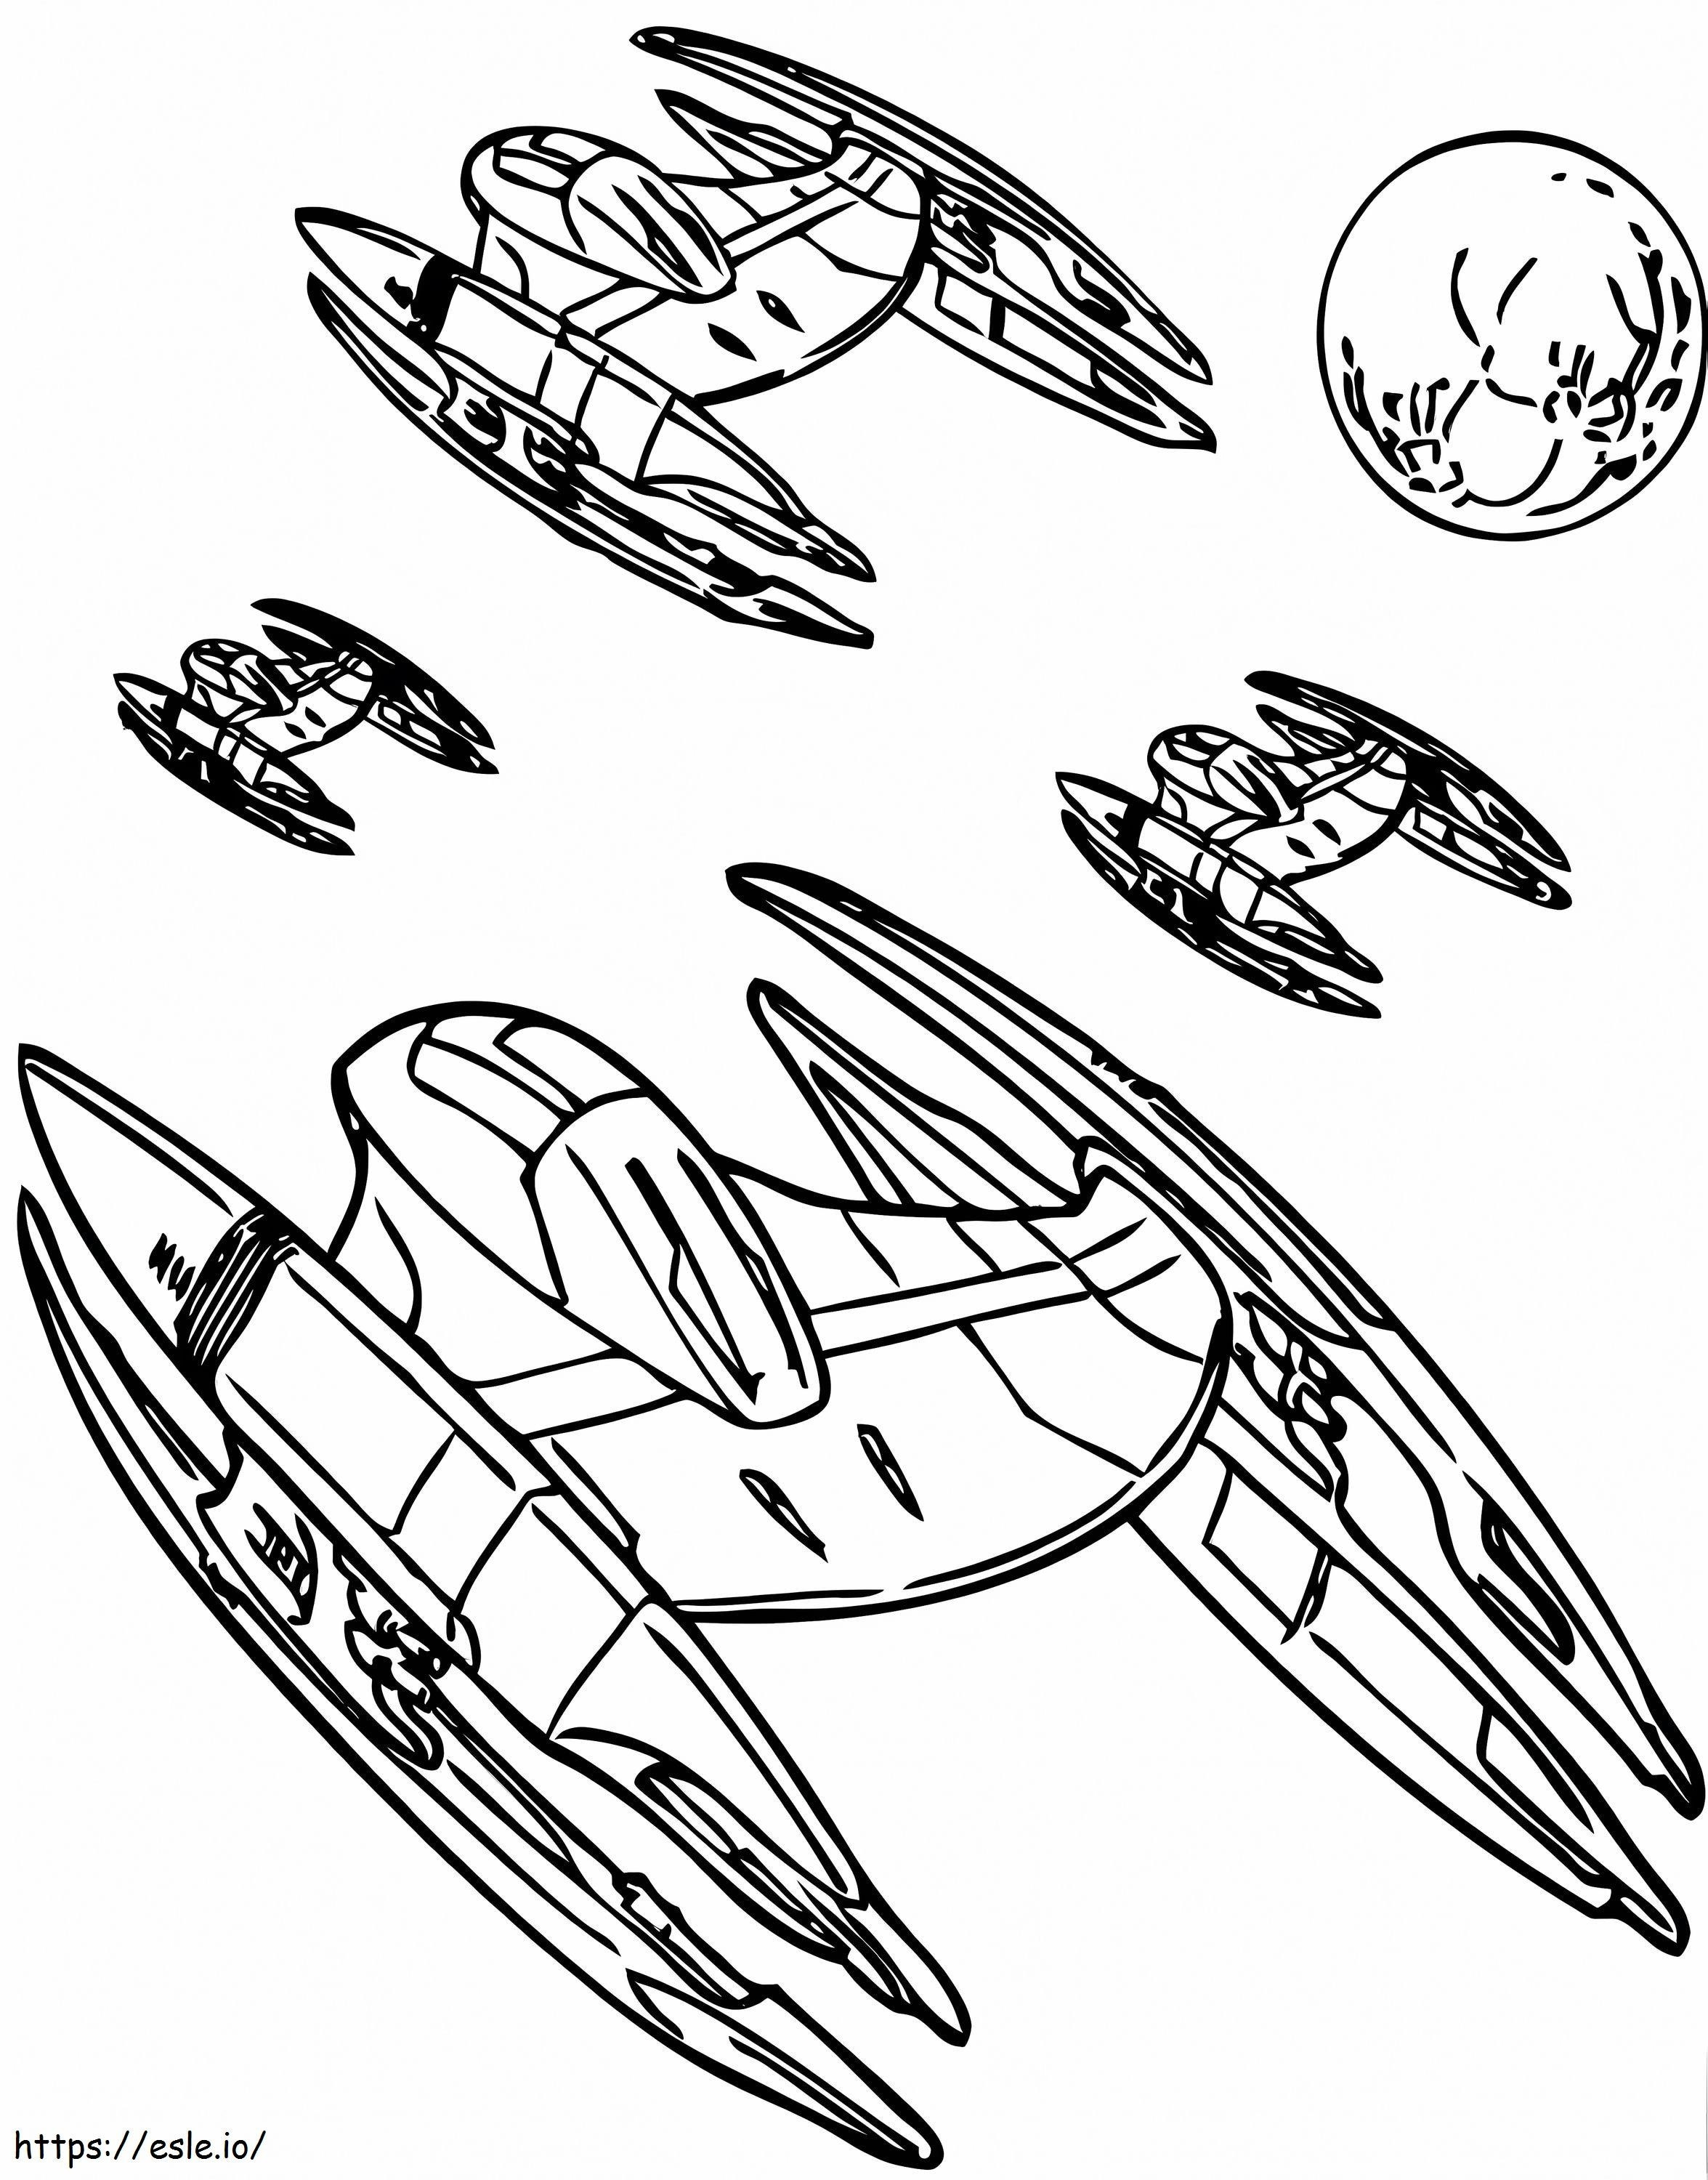 Naves espaciais da Federação Comercial para colorir